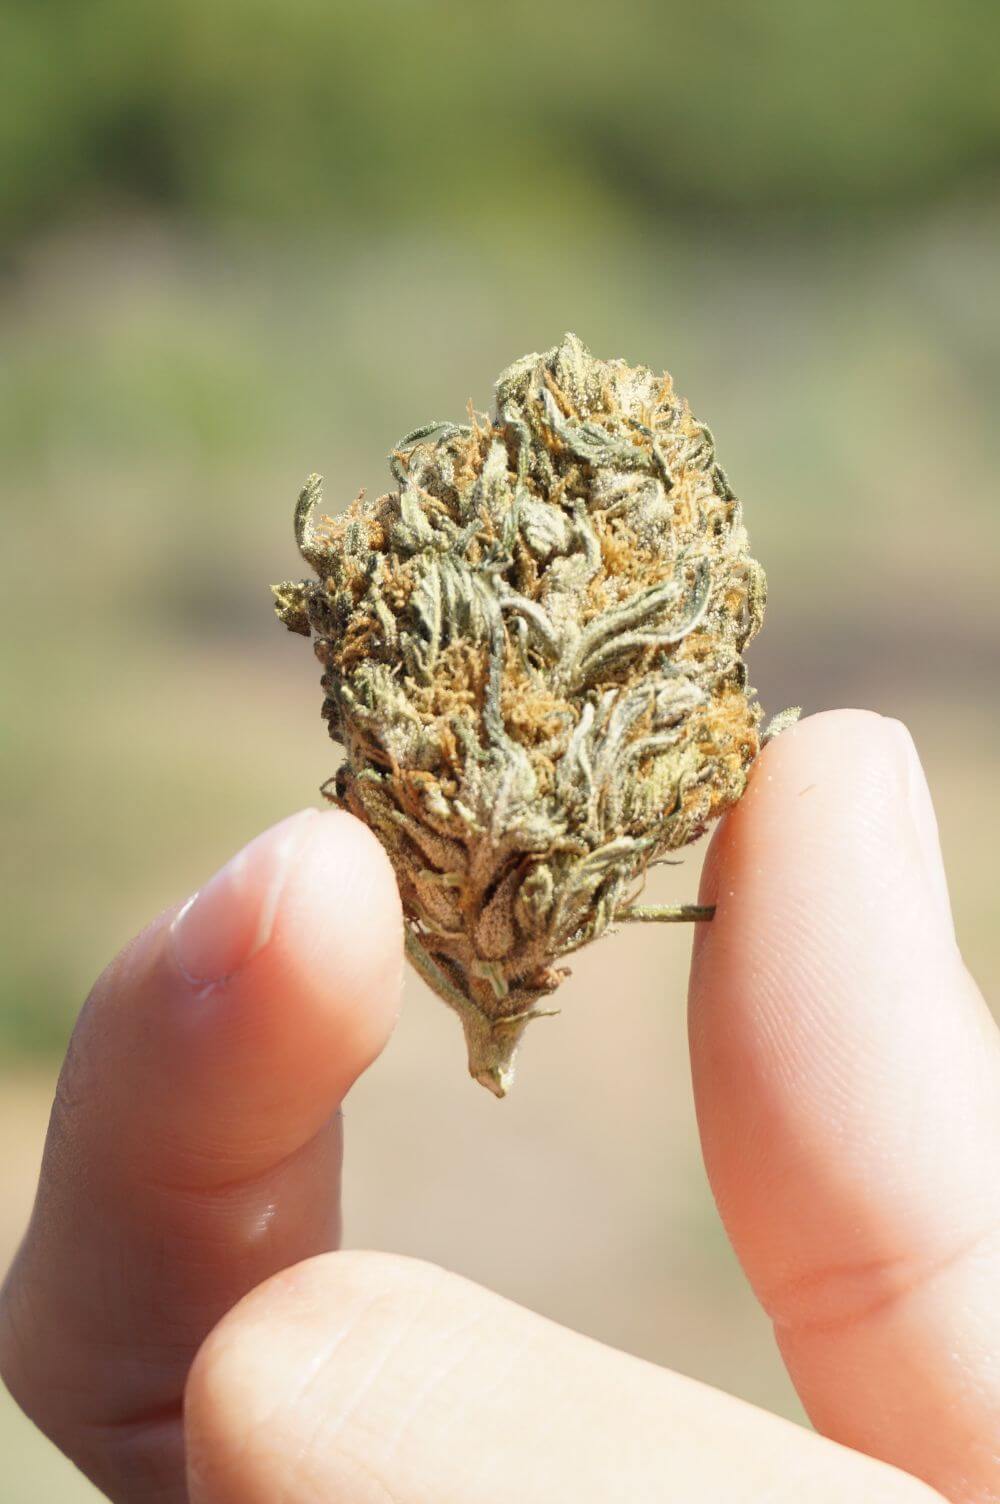 Holding a cannabis nug